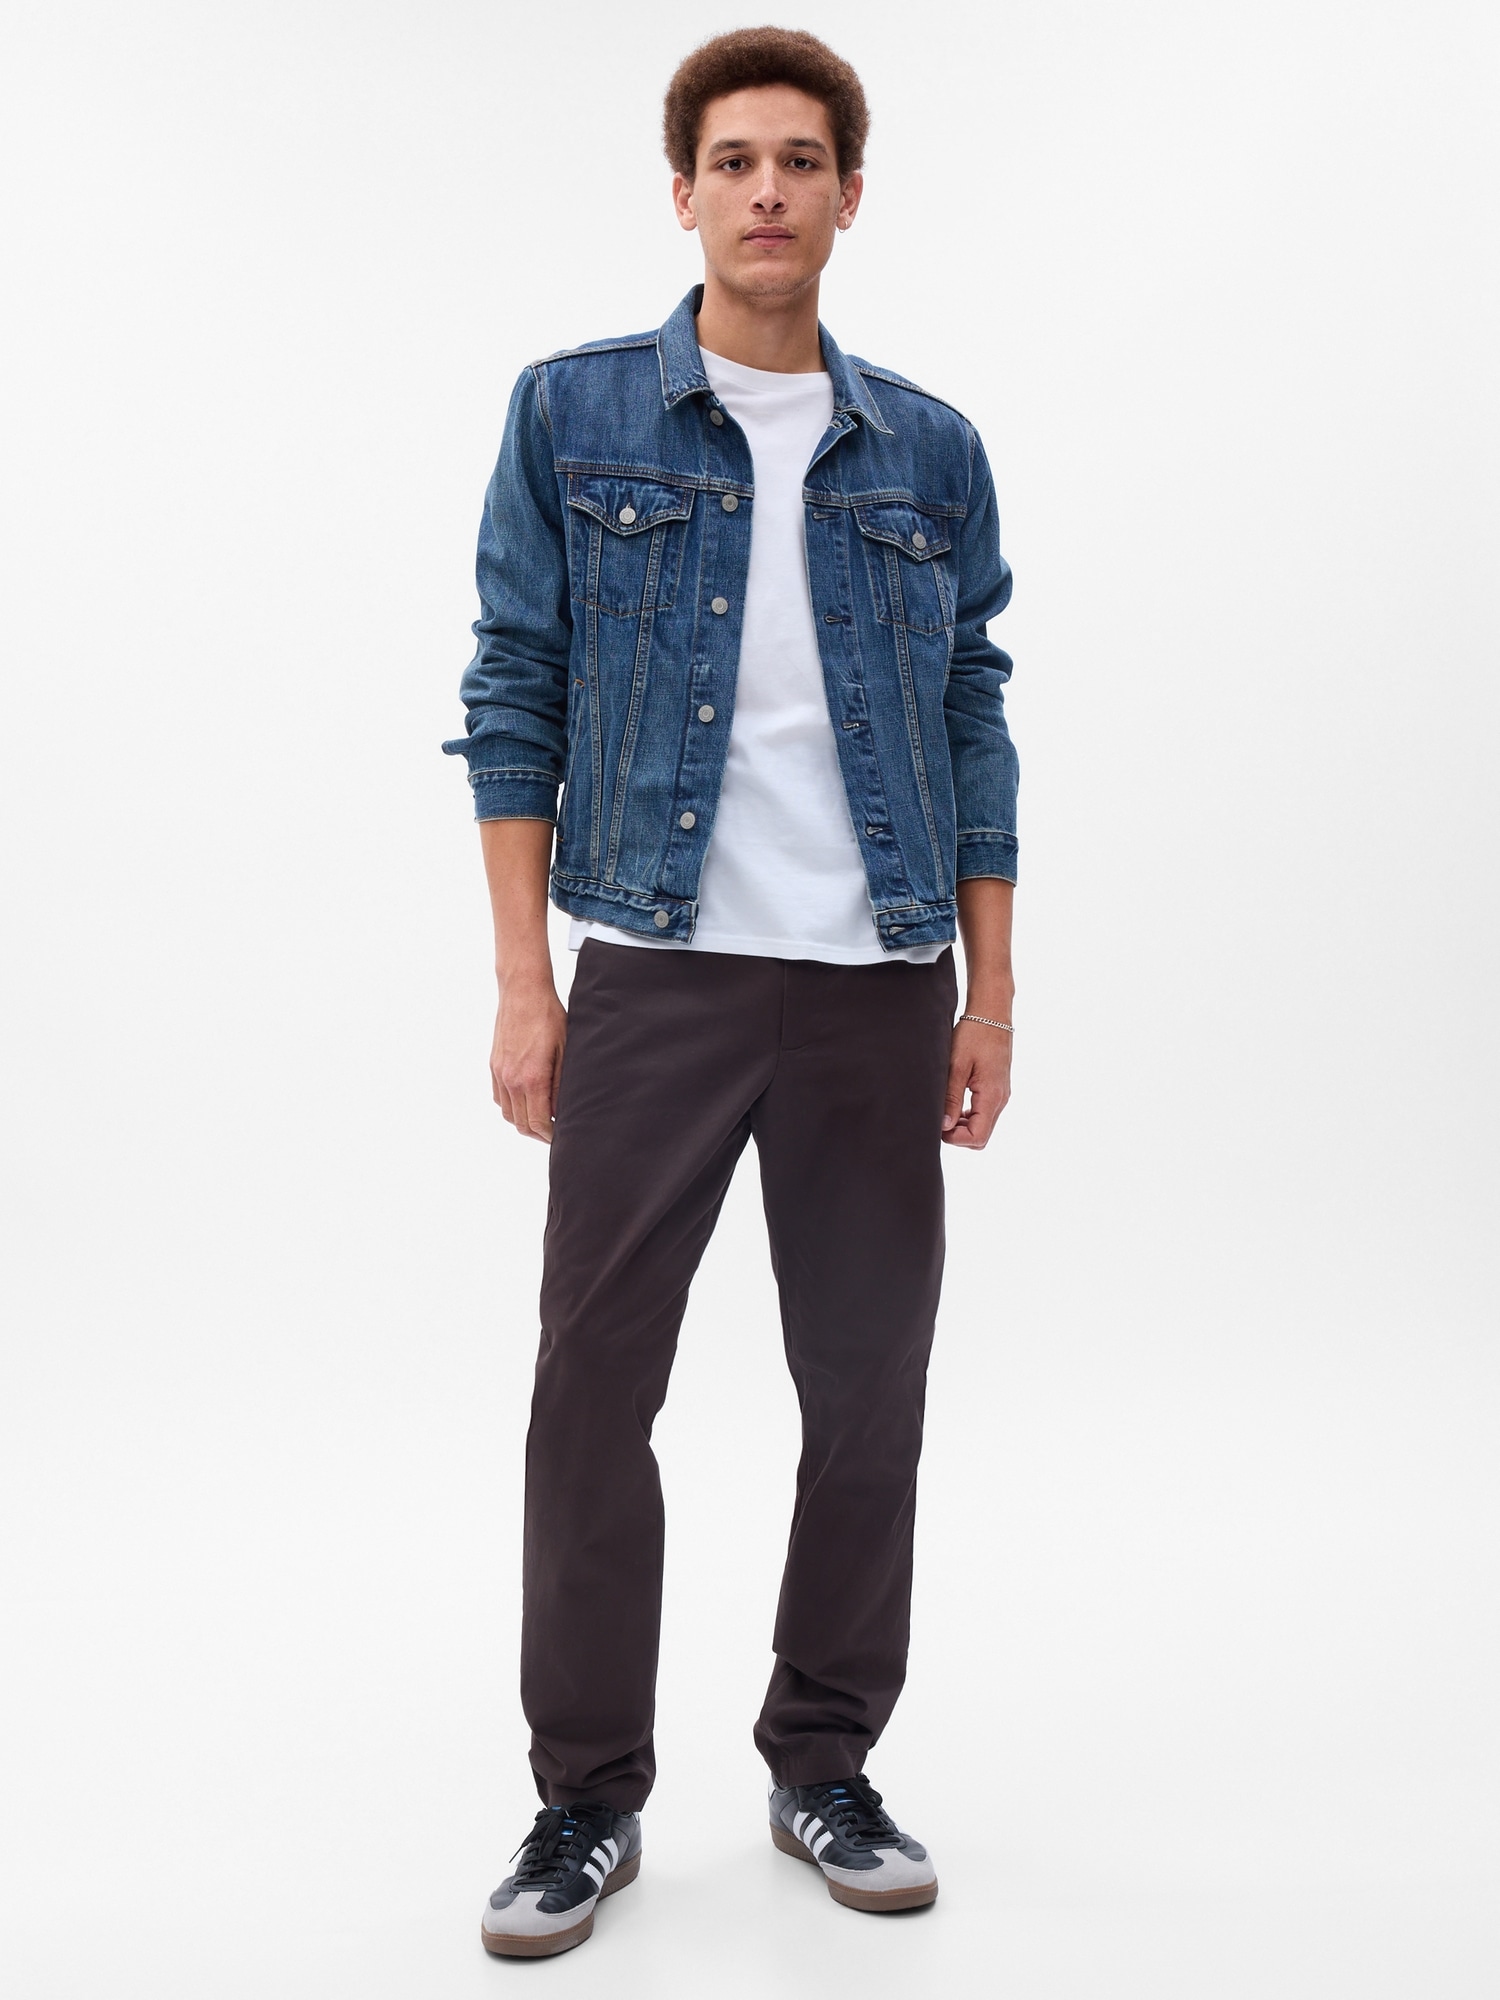 갭 Modern Khakis in Slim Fit with GapFlex